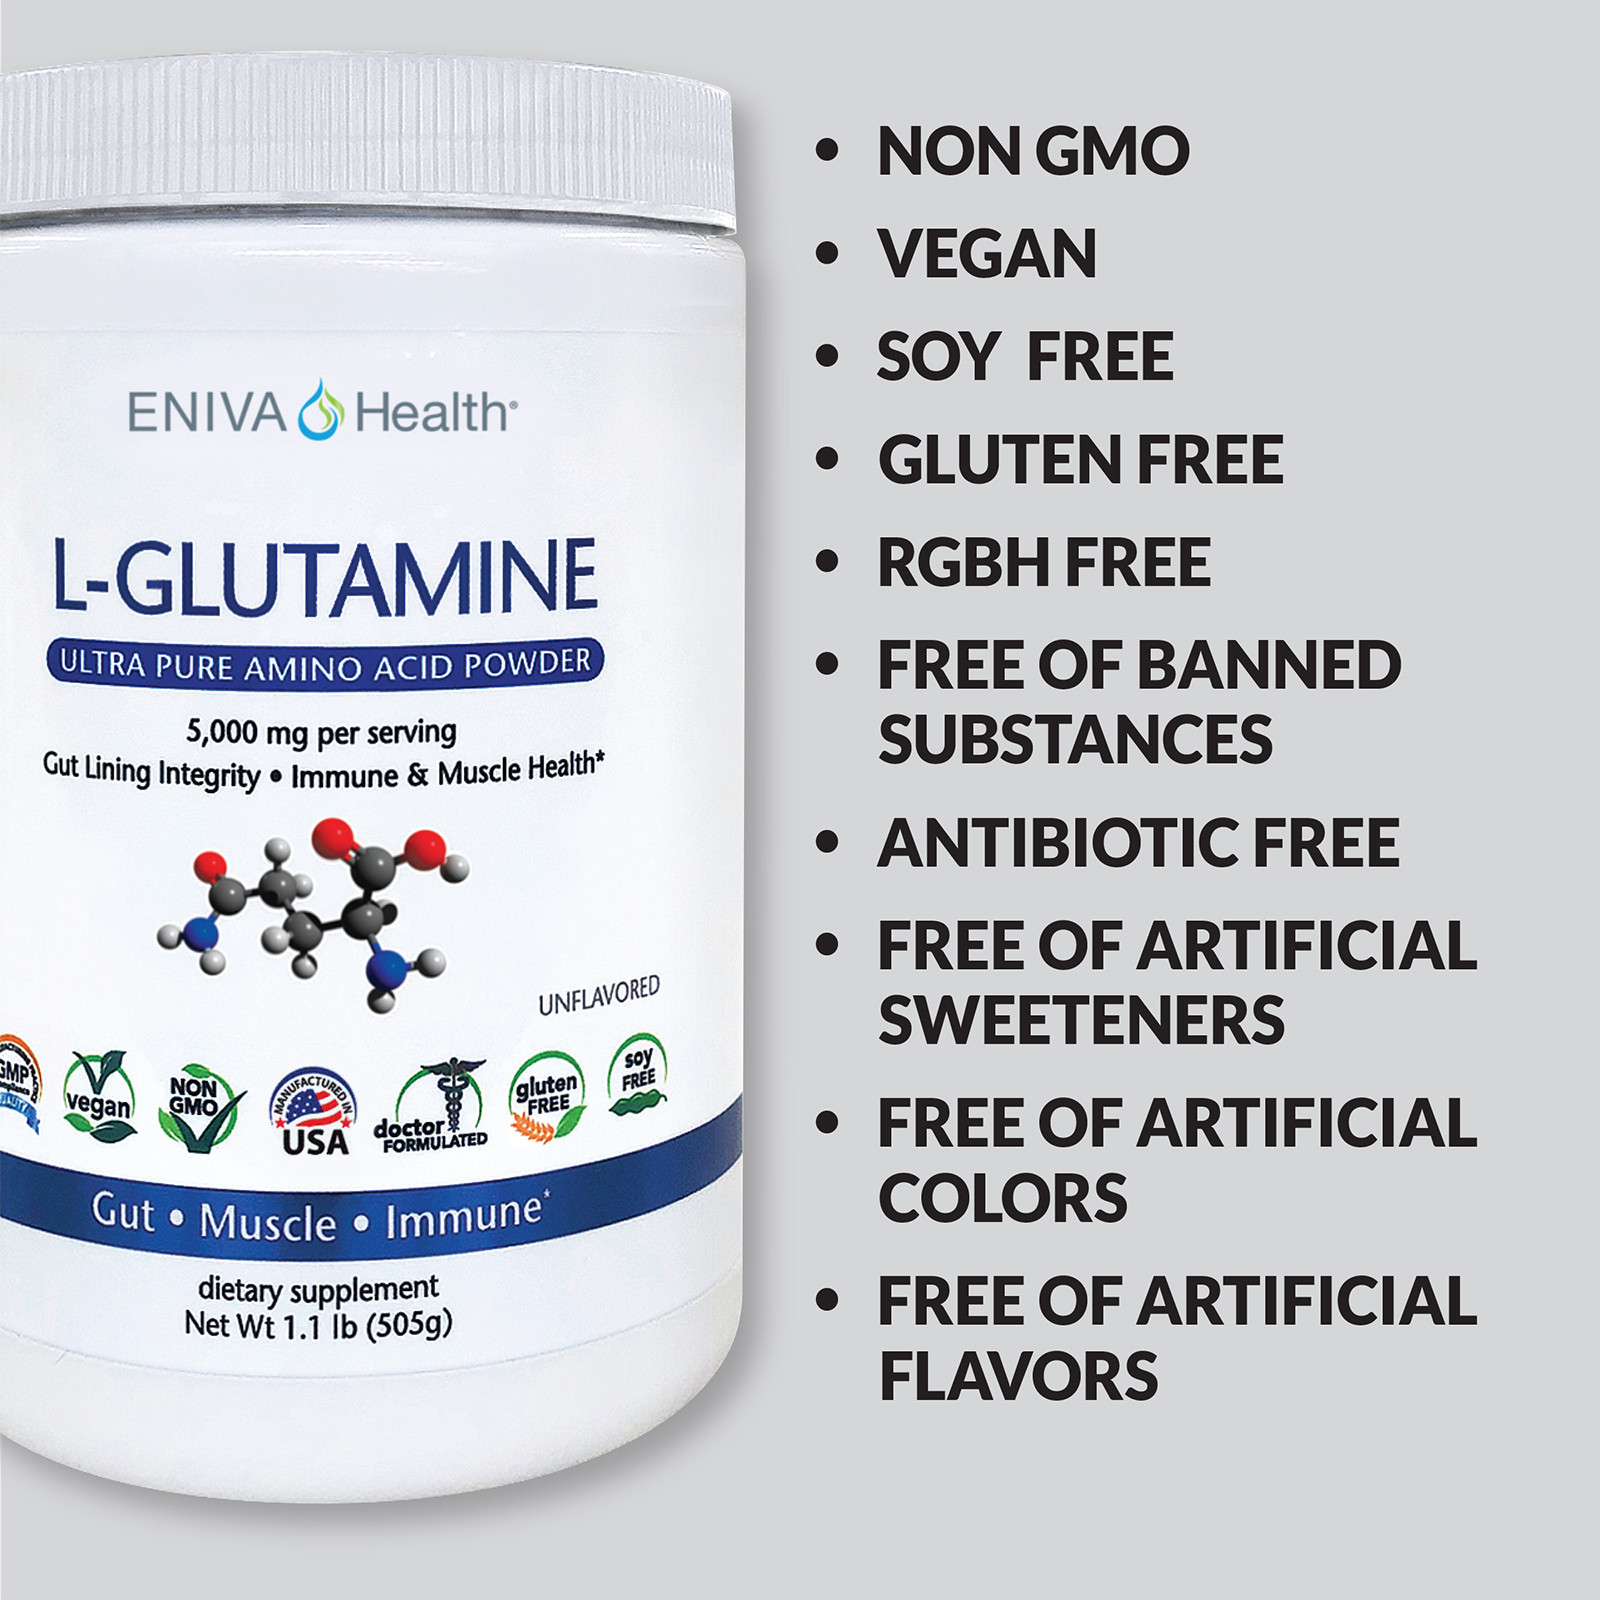 L-Glutamine BioKyowa 150g Nutripure NUTRIPURE